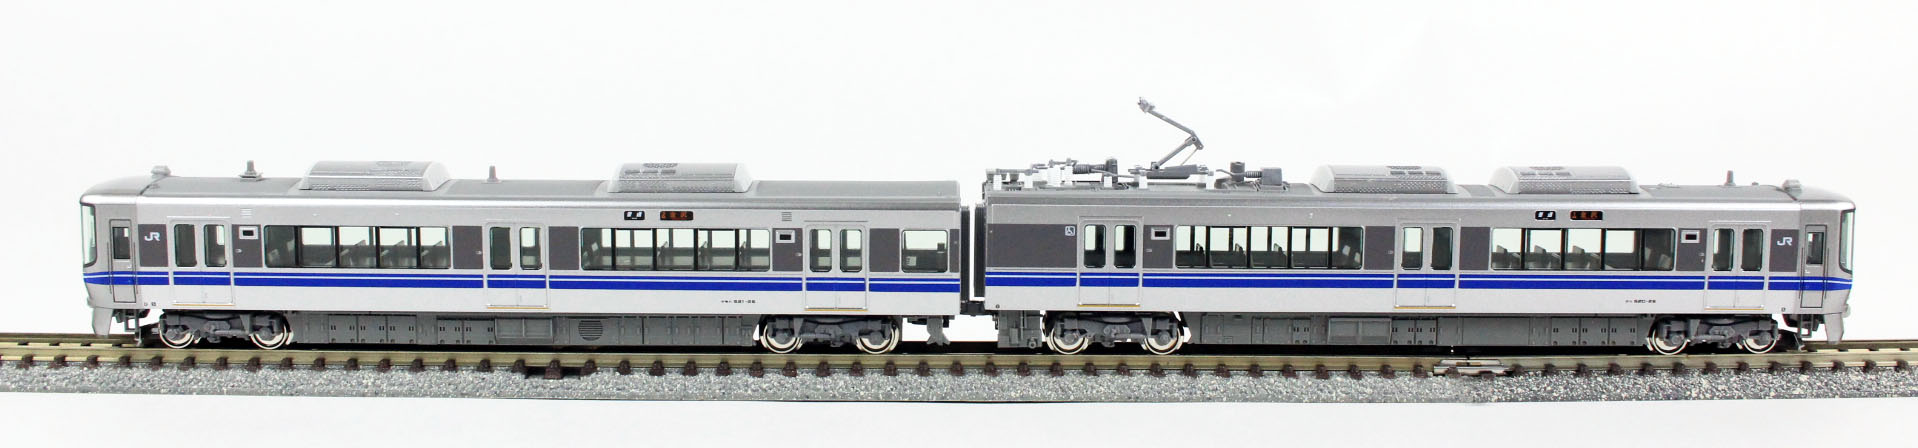 KATO 10-1395 521系 (2次車) 2両セット 鉄道模型 Nゲージ タムタム 